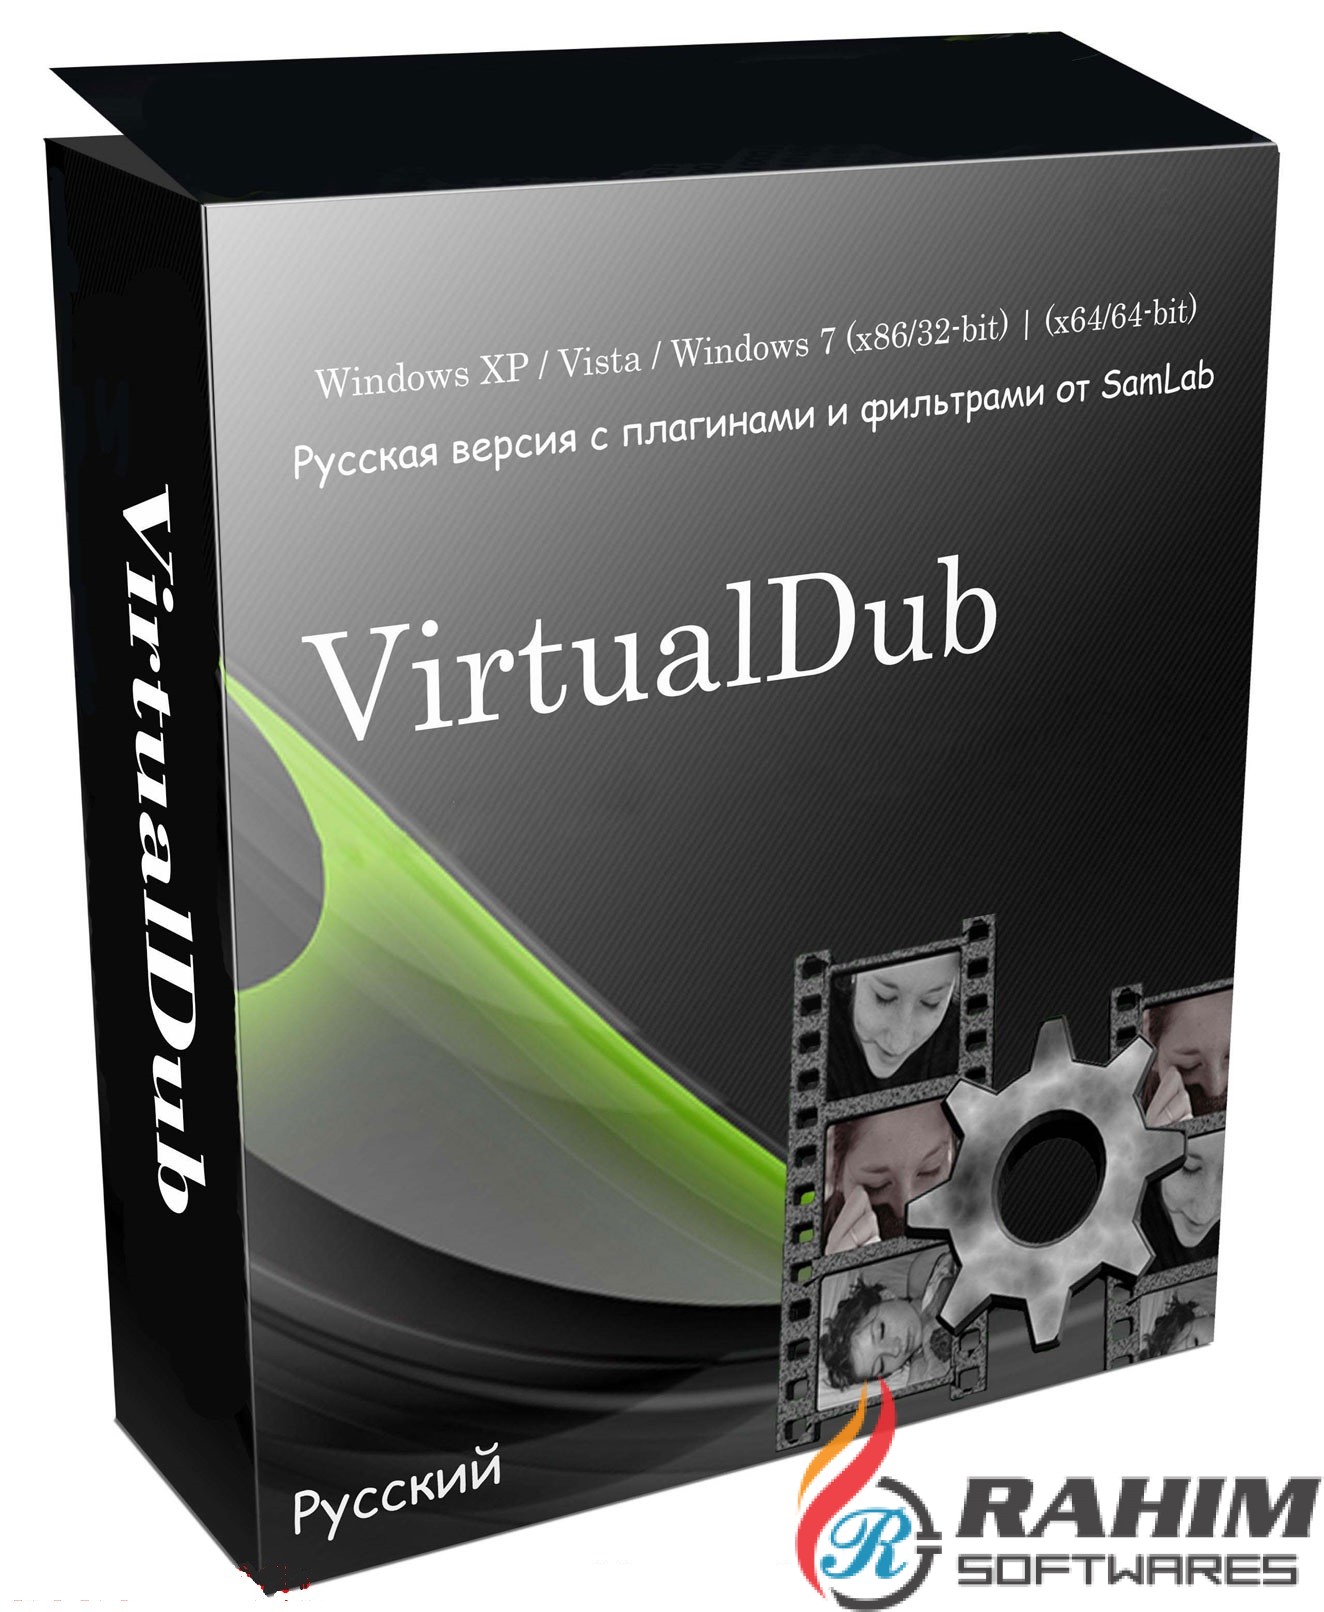 VirtualDub Portable Free Download